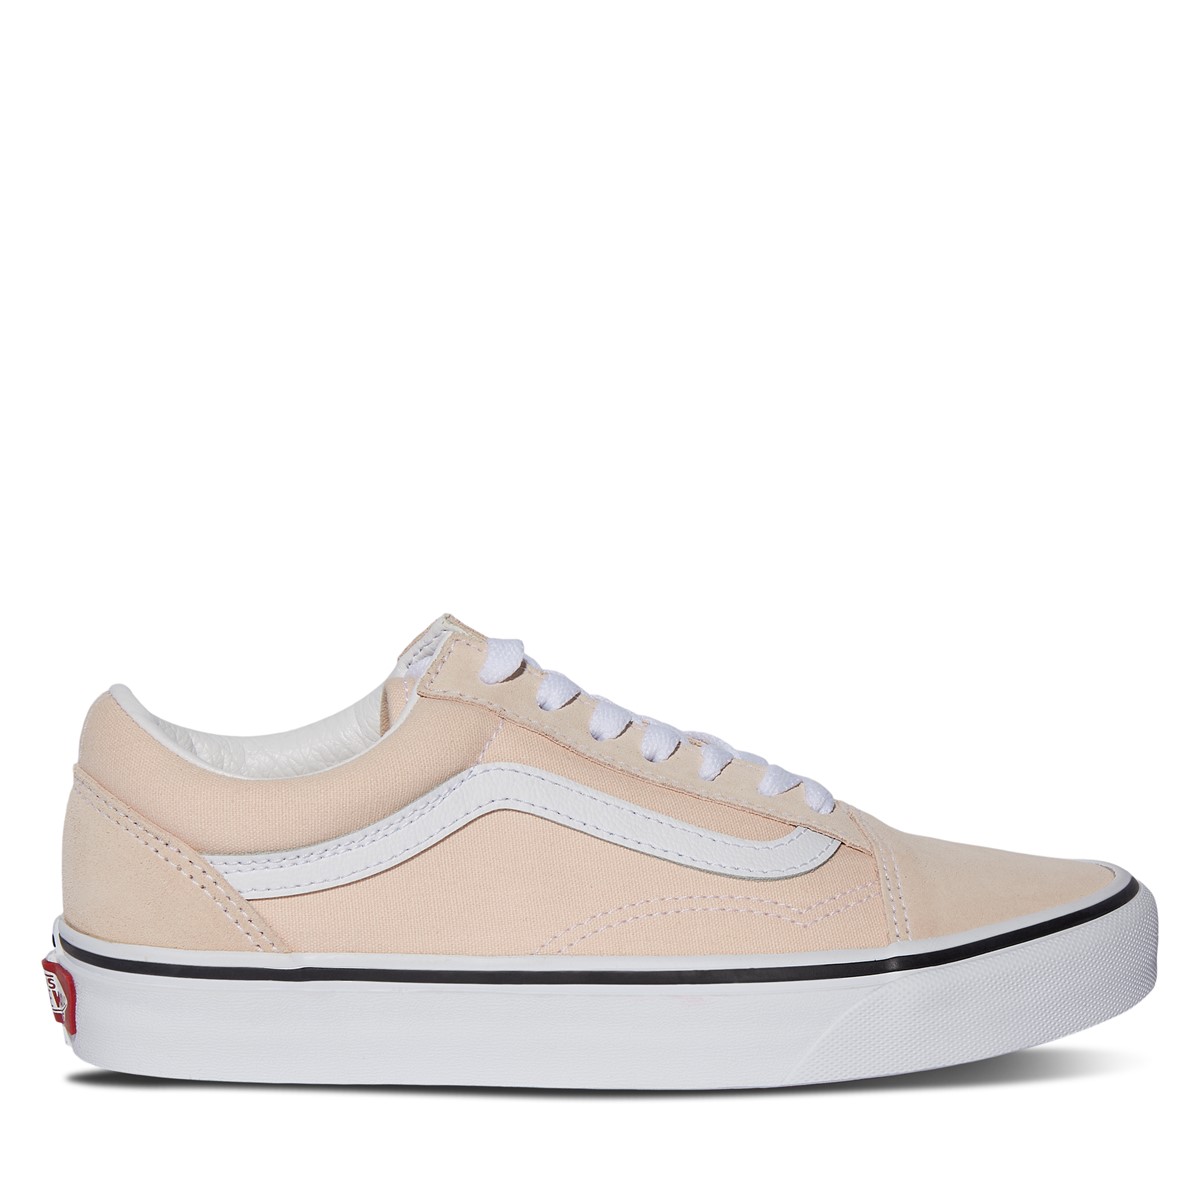 Old Skool Sneakers in Peach/White